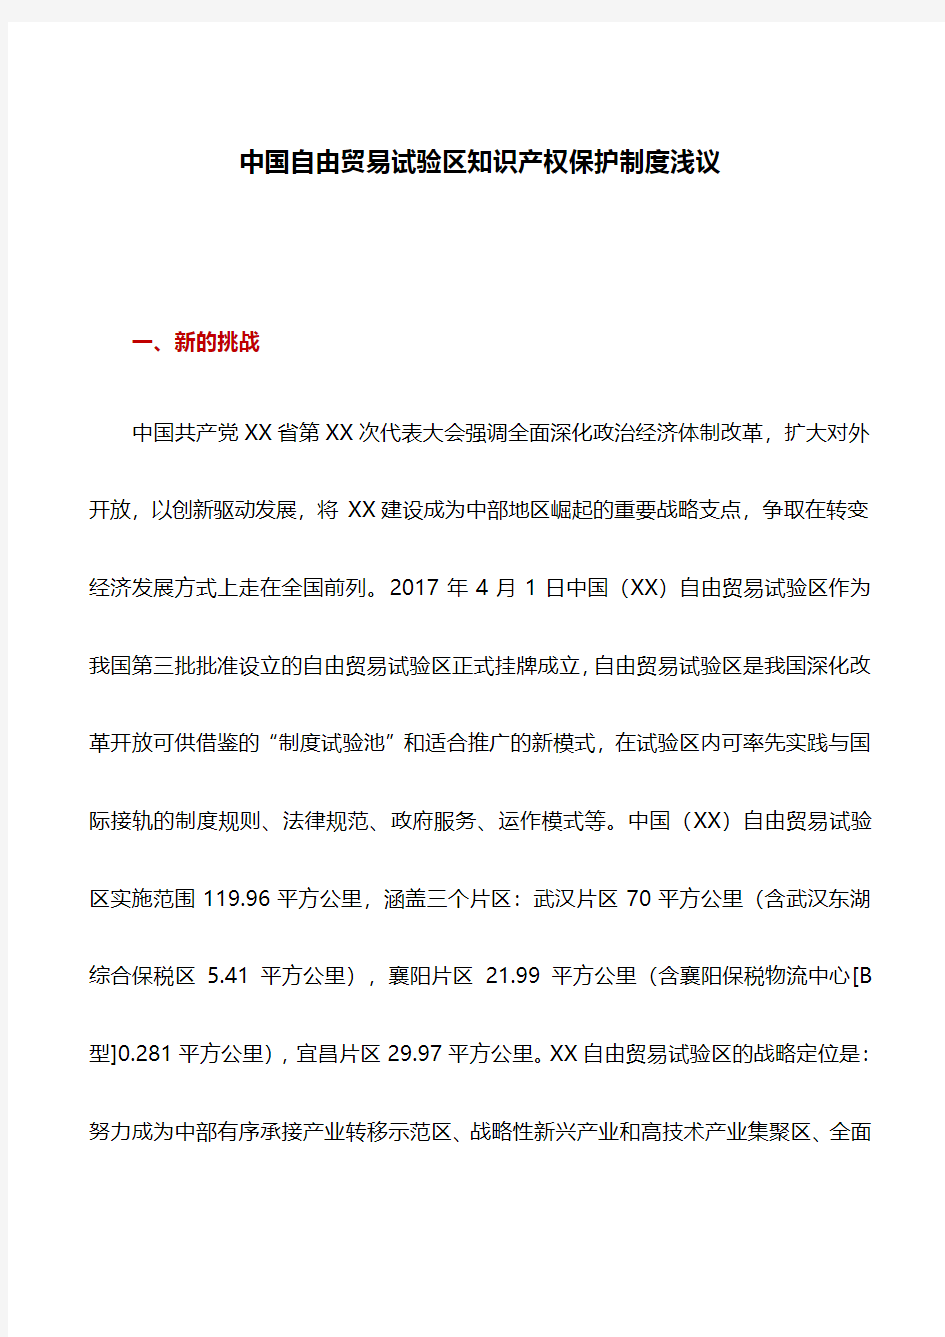 思考建议：中国自由贸易试验区知识产权保护制度浅议